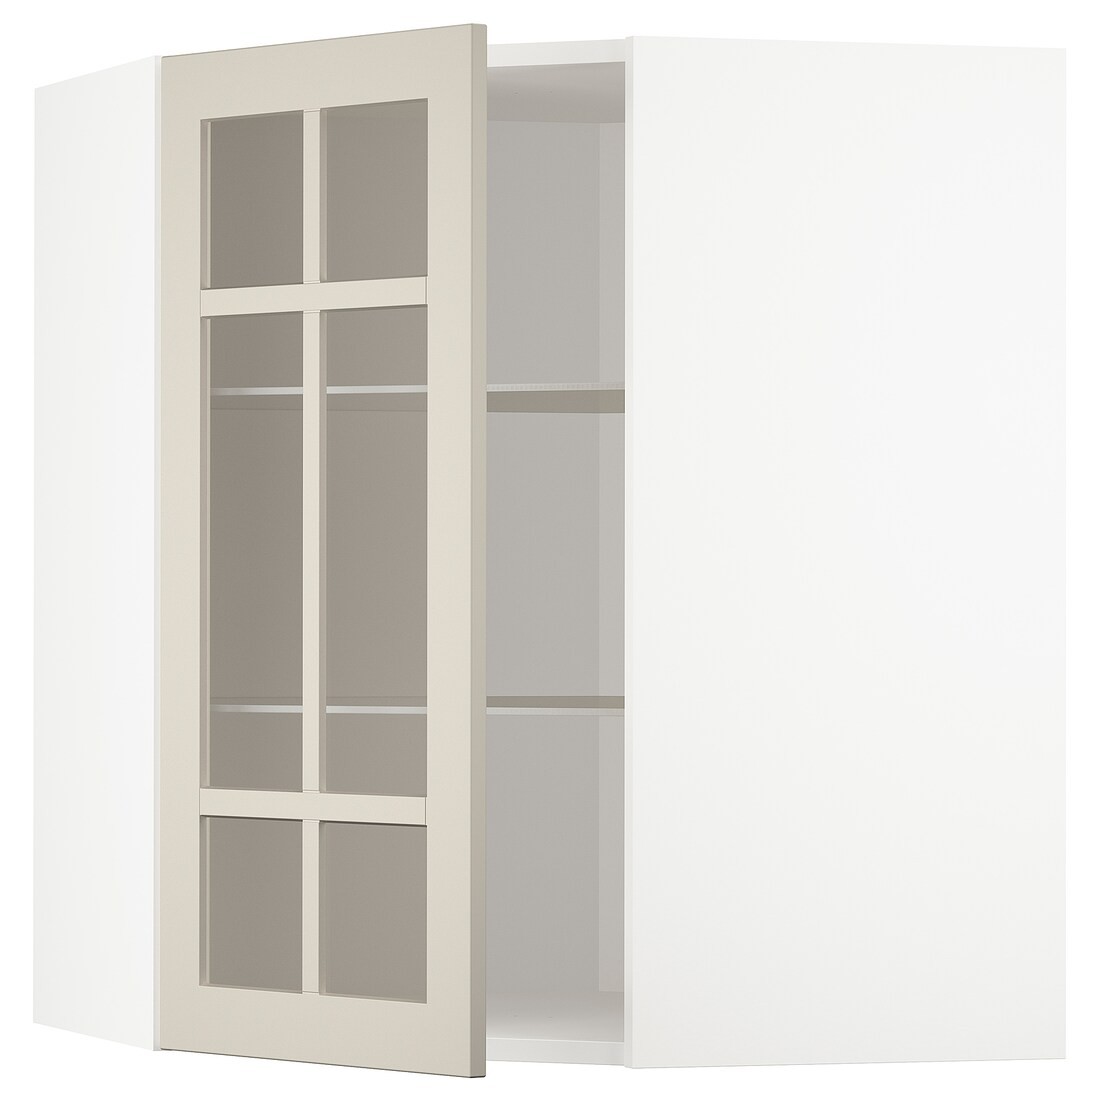 IKEA METOD МЕТОД Кутова настінна шафа з полицями / скляні двері, білий / Stensund бежевий, 68x80 см 69407974 694.079.74